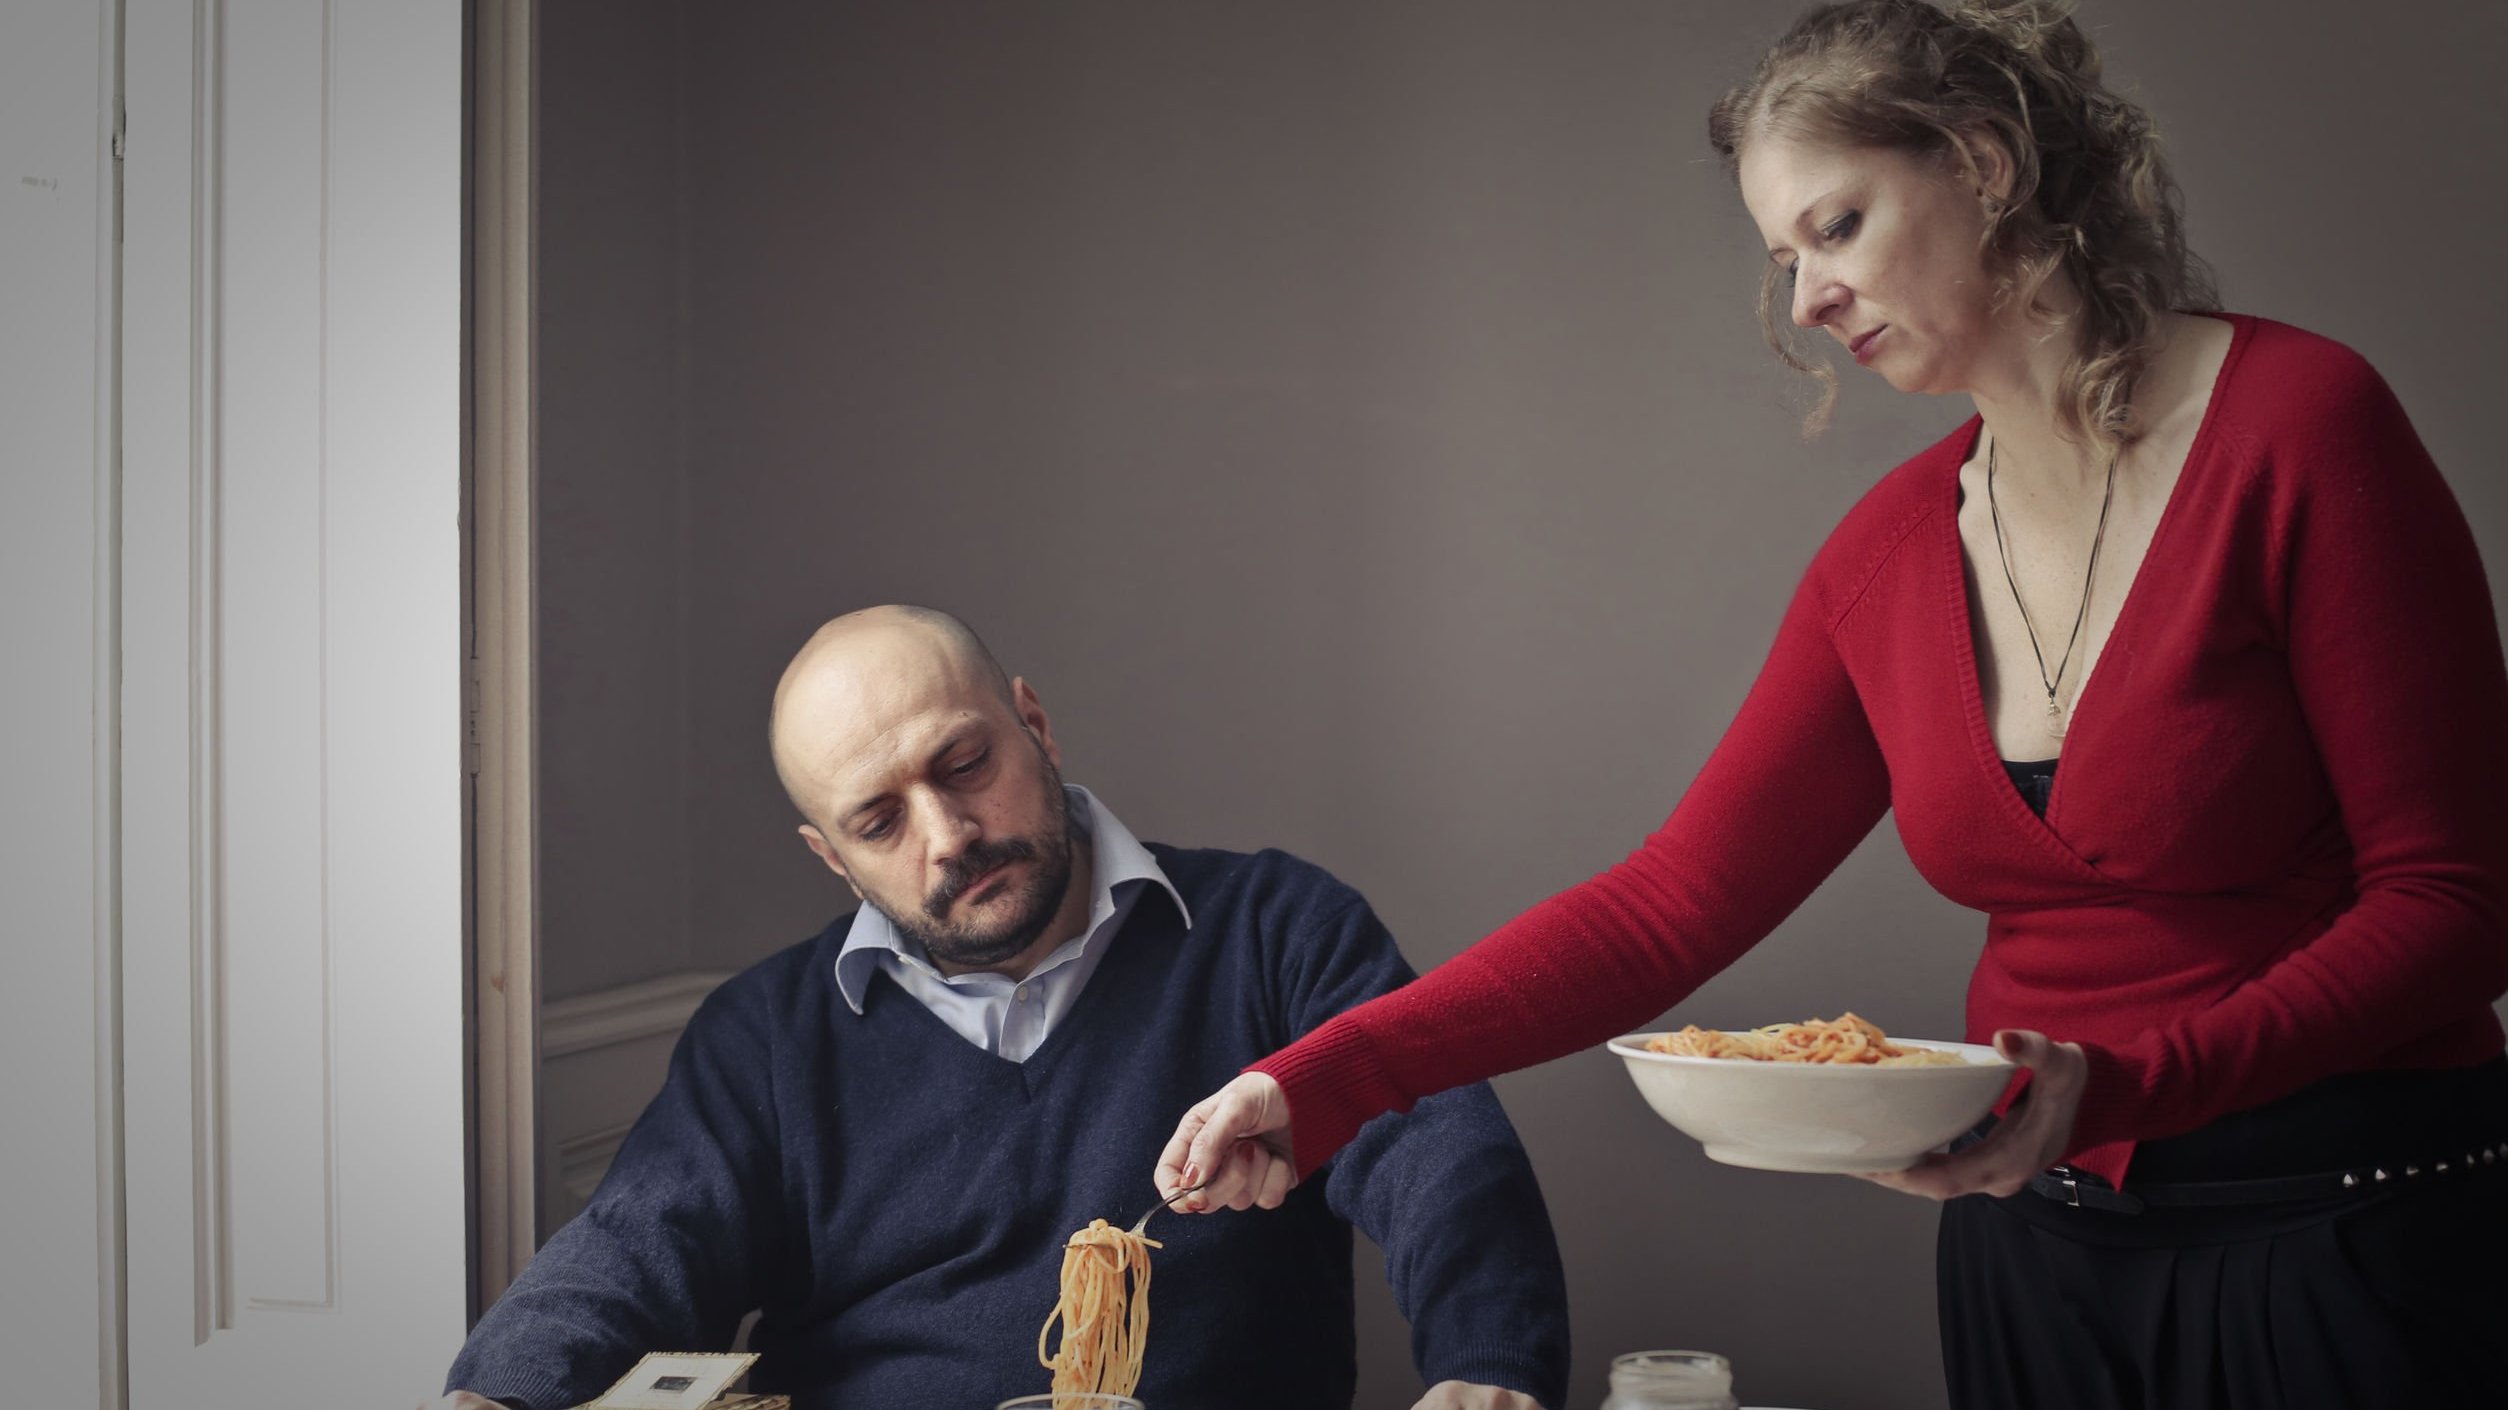 Homem sentado em mesa de jantar com mulher lhe servindo uma porção de macarrão. O homem parece impaciente e a mulher tem uma expressão cansada.